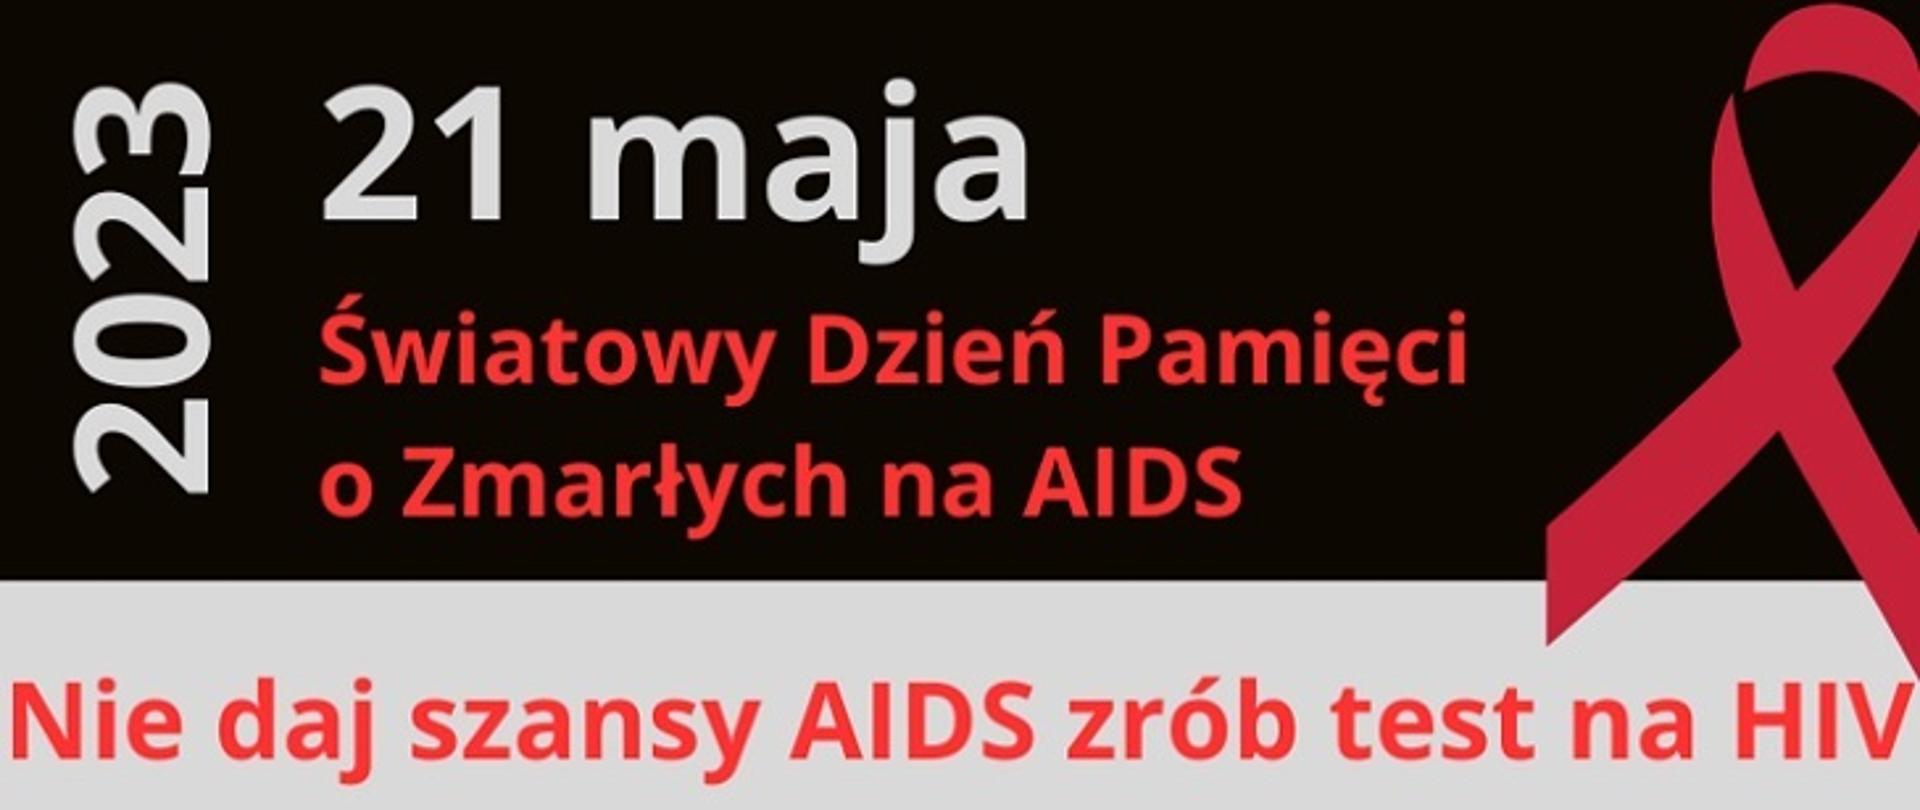 21 maja Światowy Dzień Pamięci o Zmarłych na AIDS